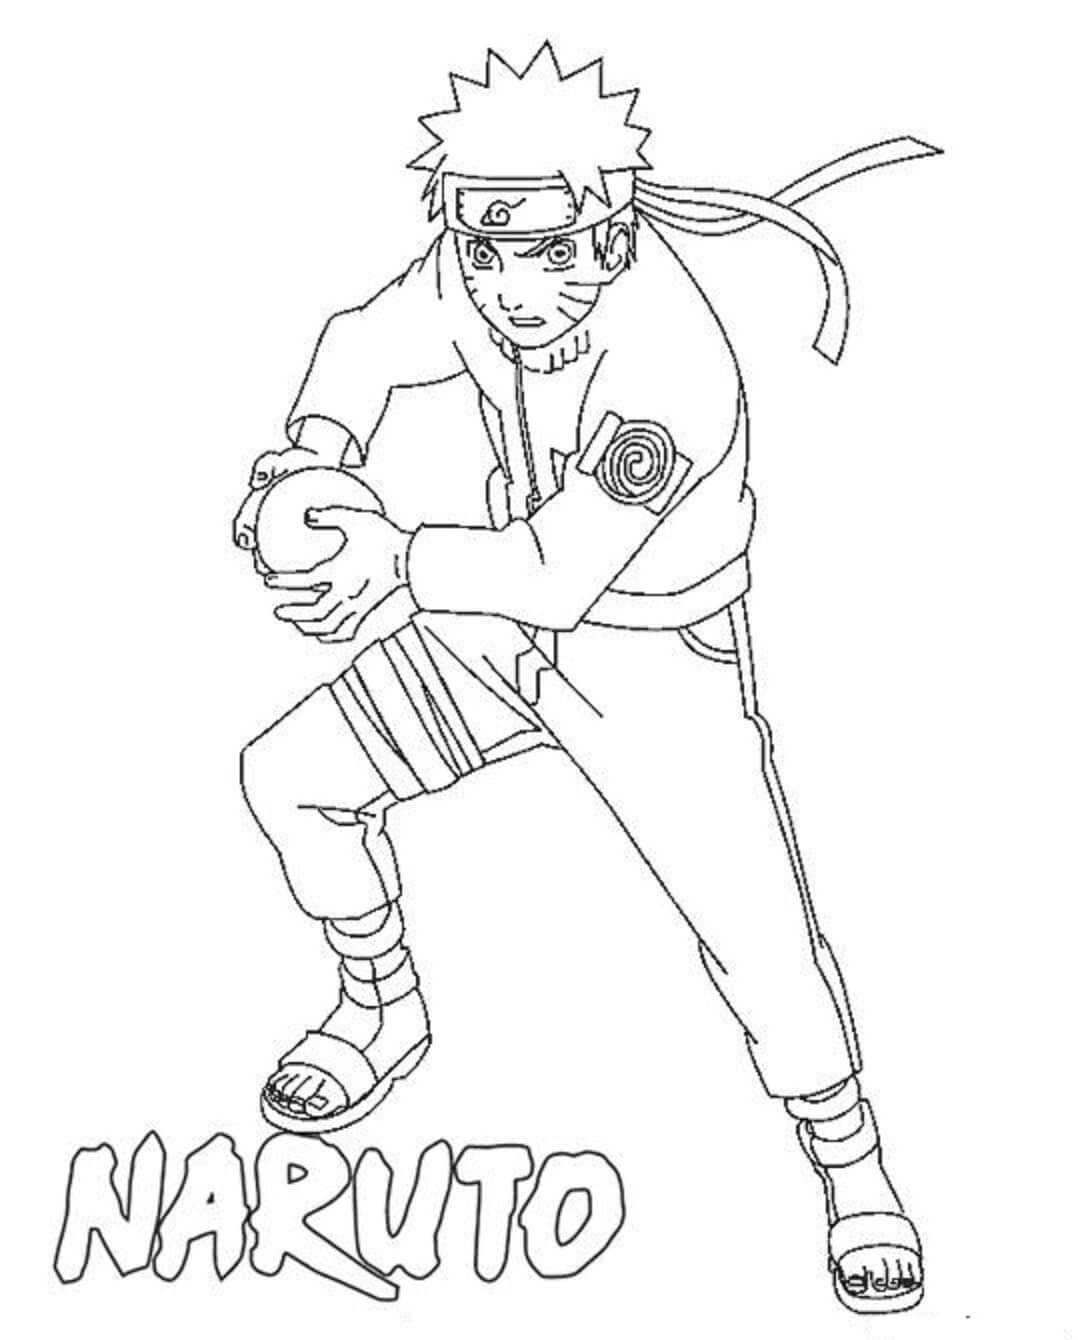 Naruto mit Rasengan